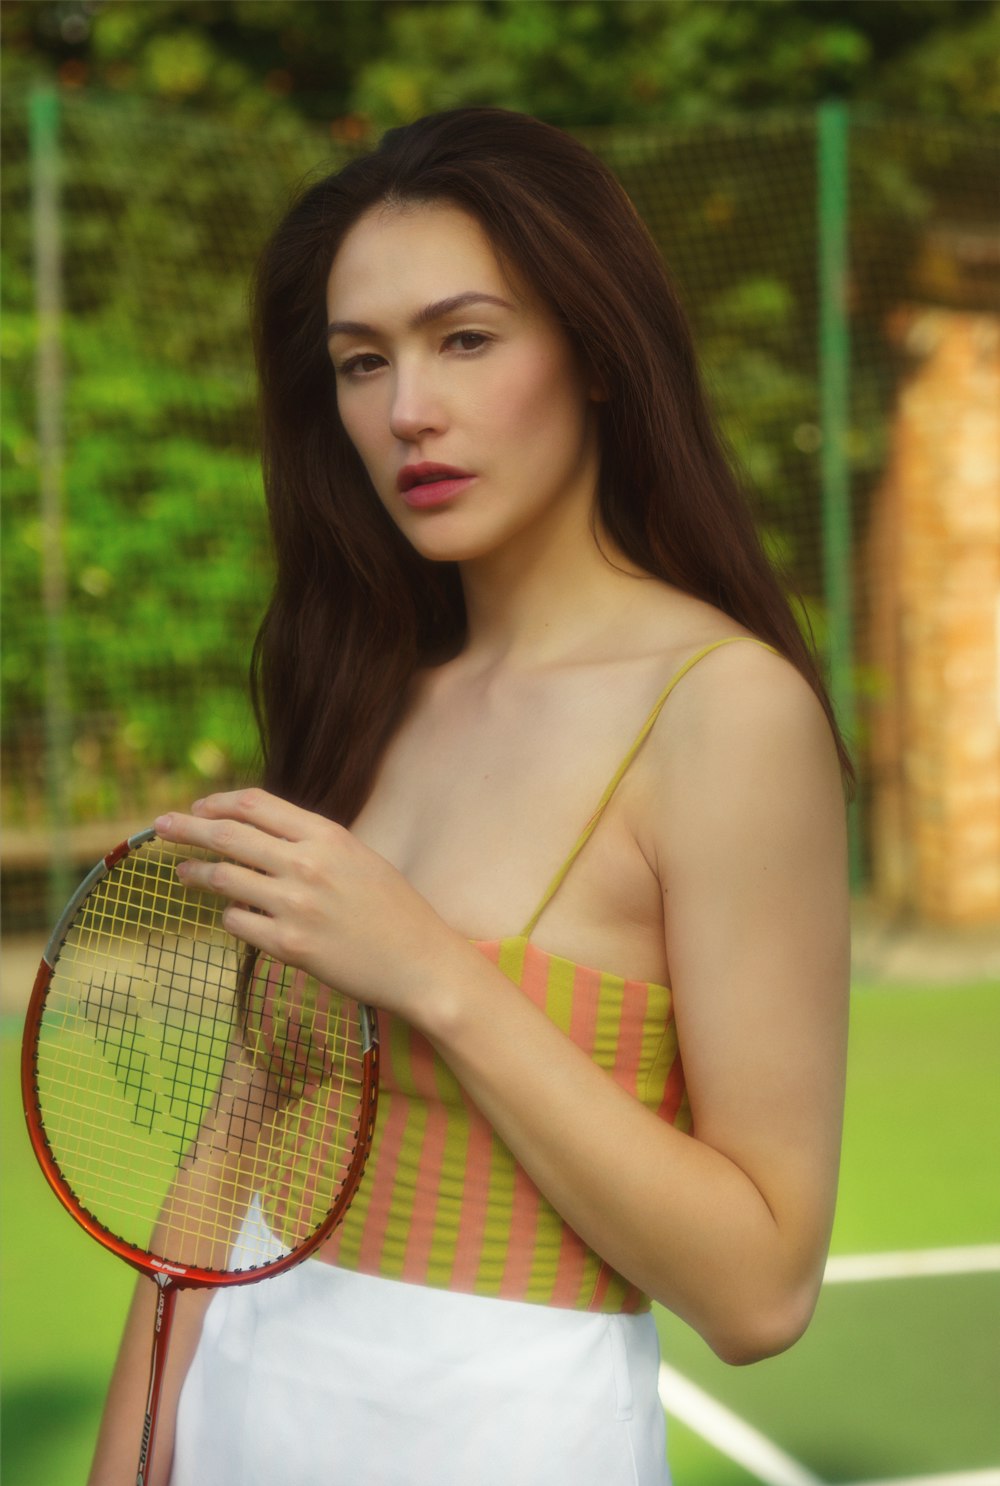 テニスラケットを持っている黄色と緑のビキニトップの女性